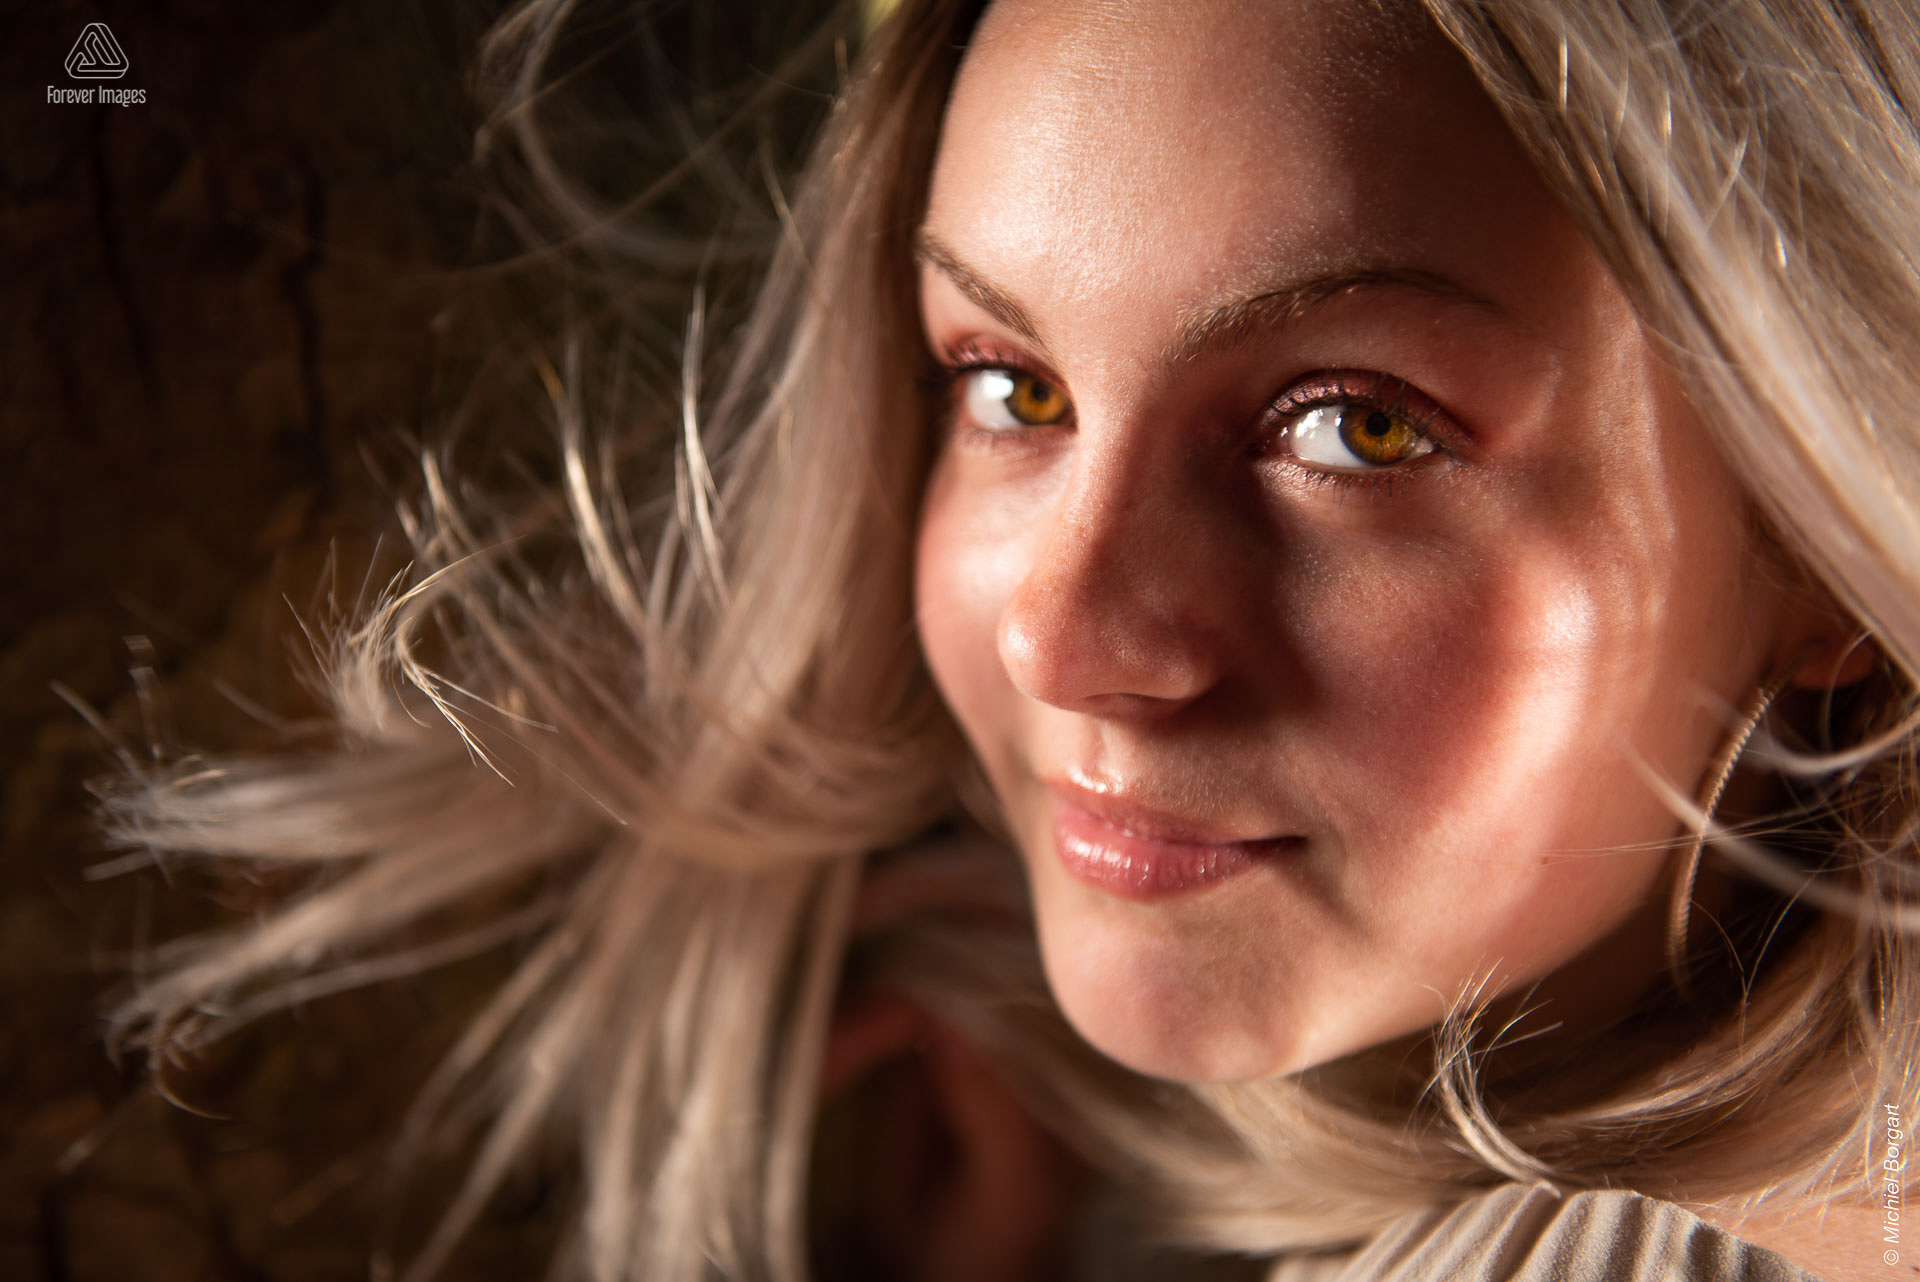 Portretfoto jonge dame mooie ogen dansend blond haar | Porscha Luna de Jong Happyhappyjoyjoy | Portretfotograaf Michiel Borgart - Forever Images.